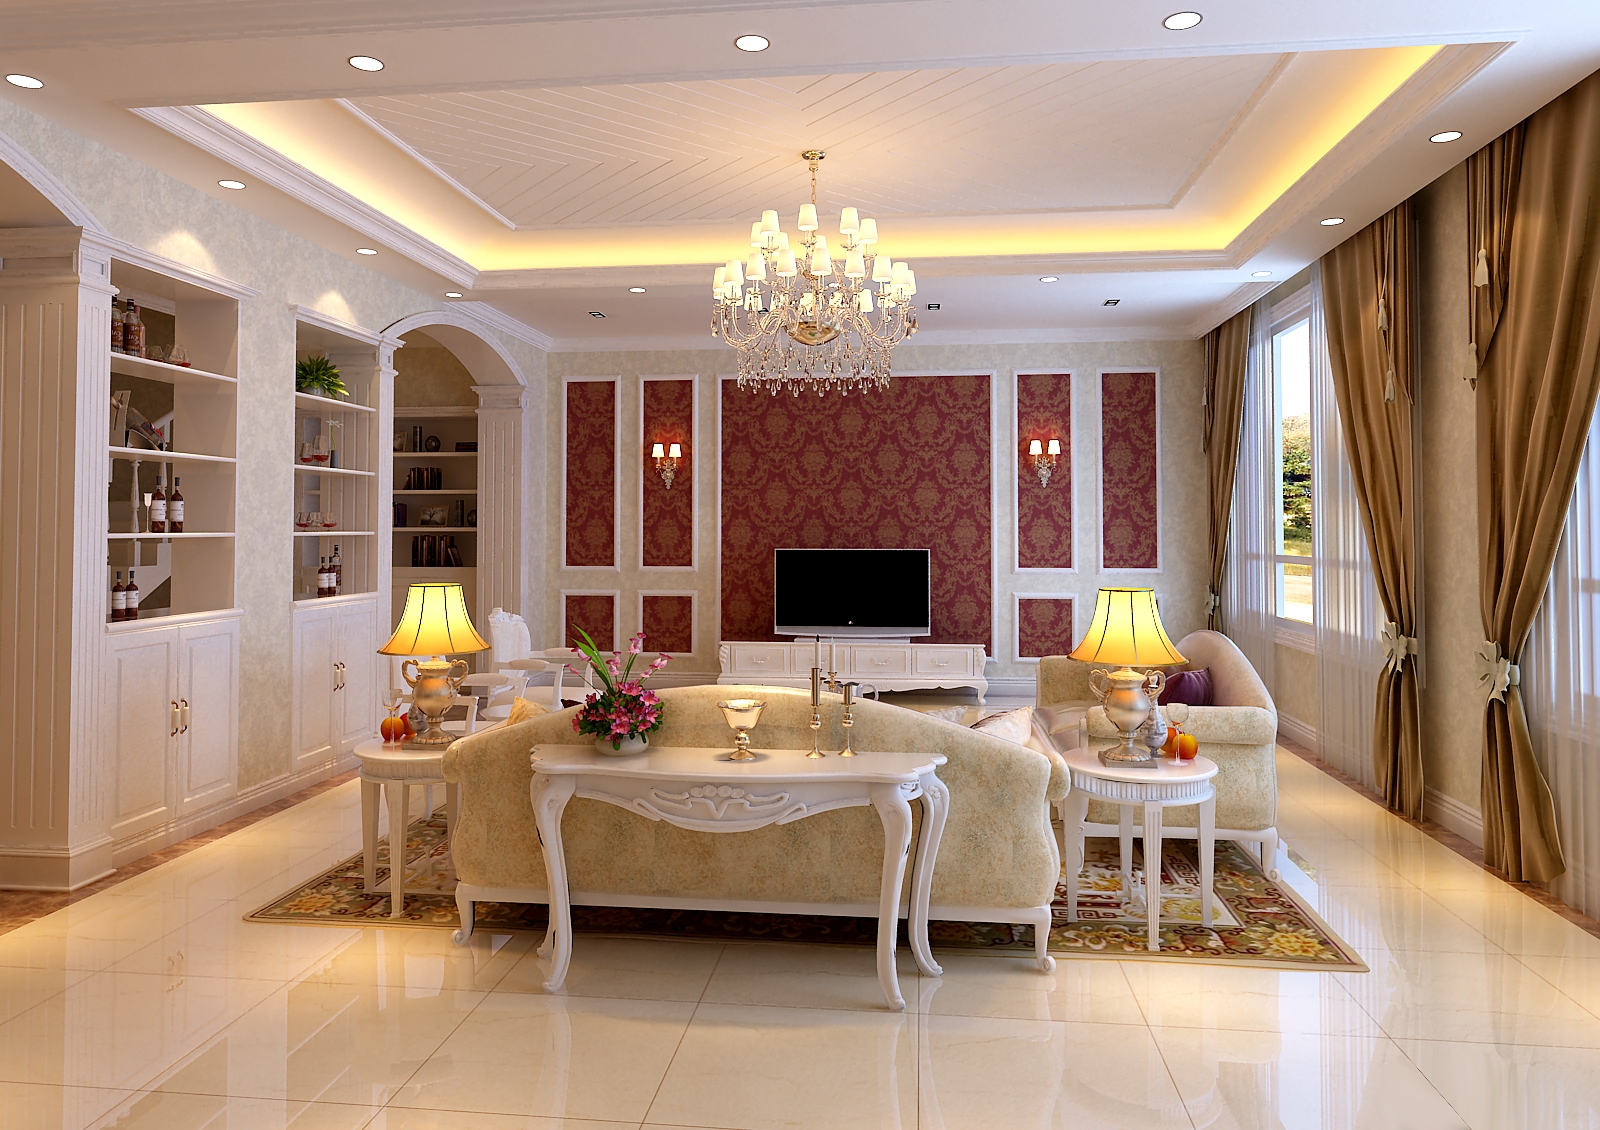 别墅 欧式 混搭 小资 高规格 独栋 古典 优雅 精致 客厅图片来自重庆高度国际装饰工程有限公司在富河园-欧式的分享